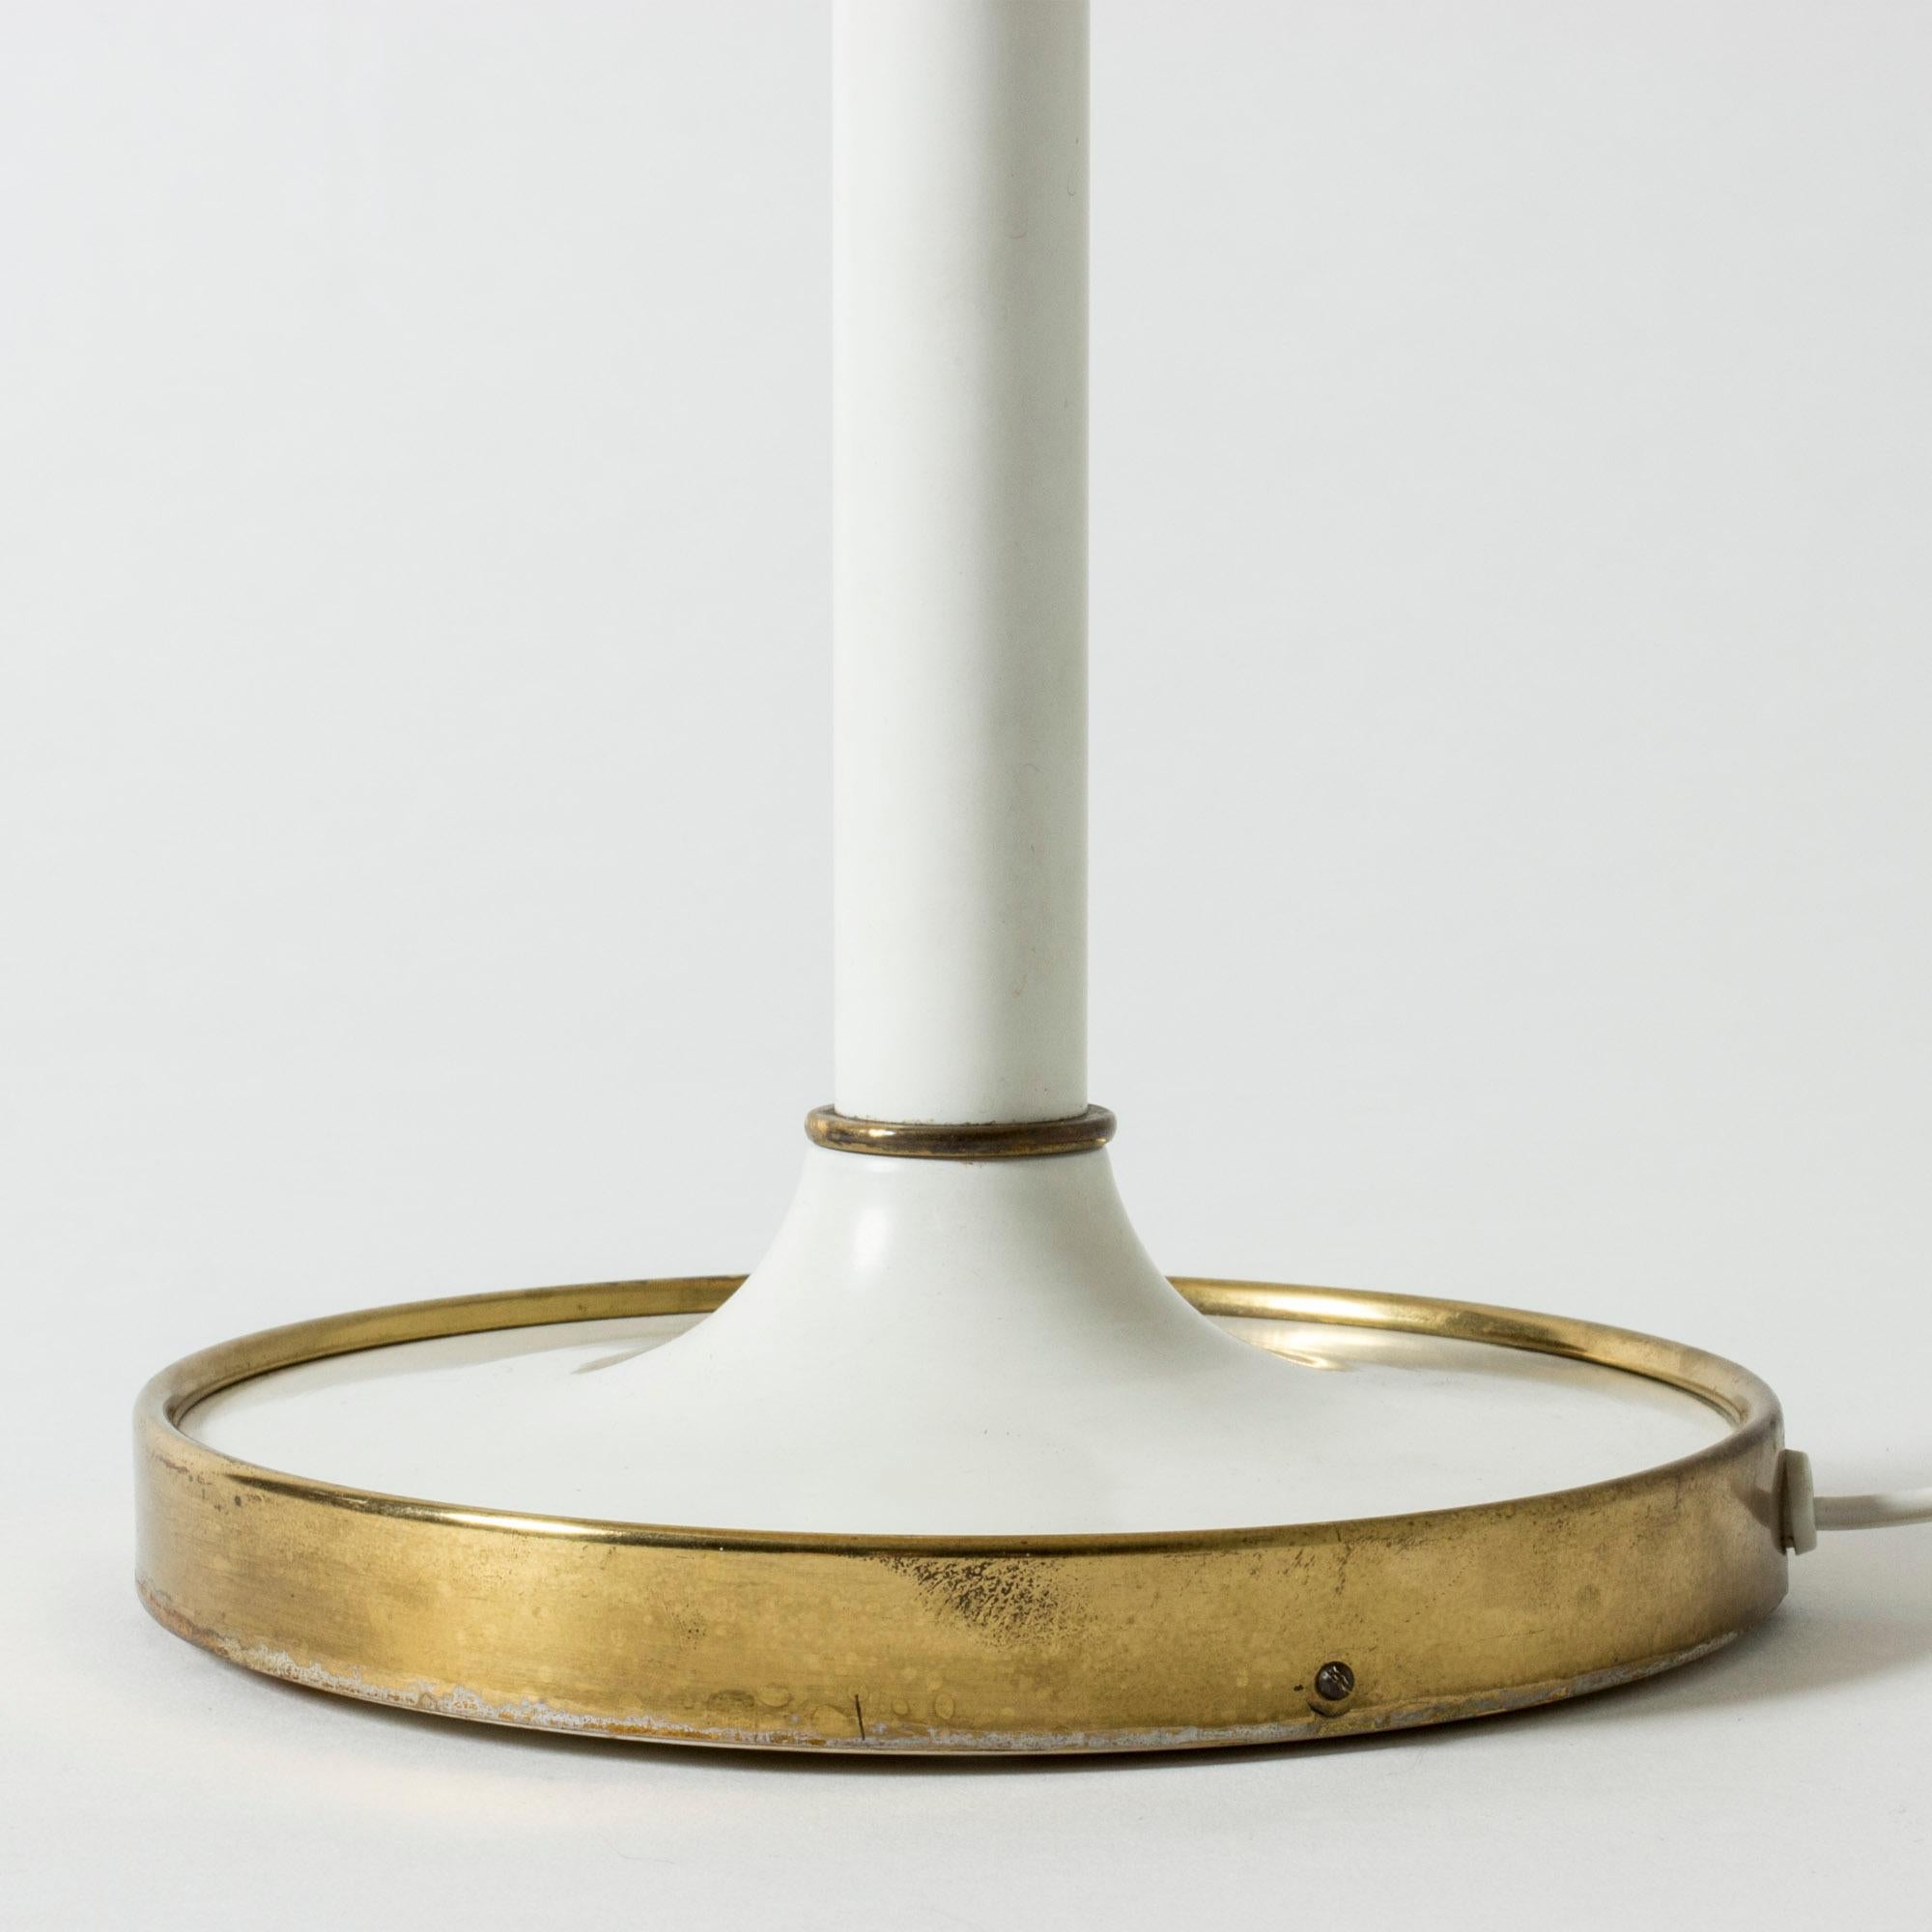 Brass Table Lamp #2466 Designed by Josef Frank for Svenskt Tenn, Sweden